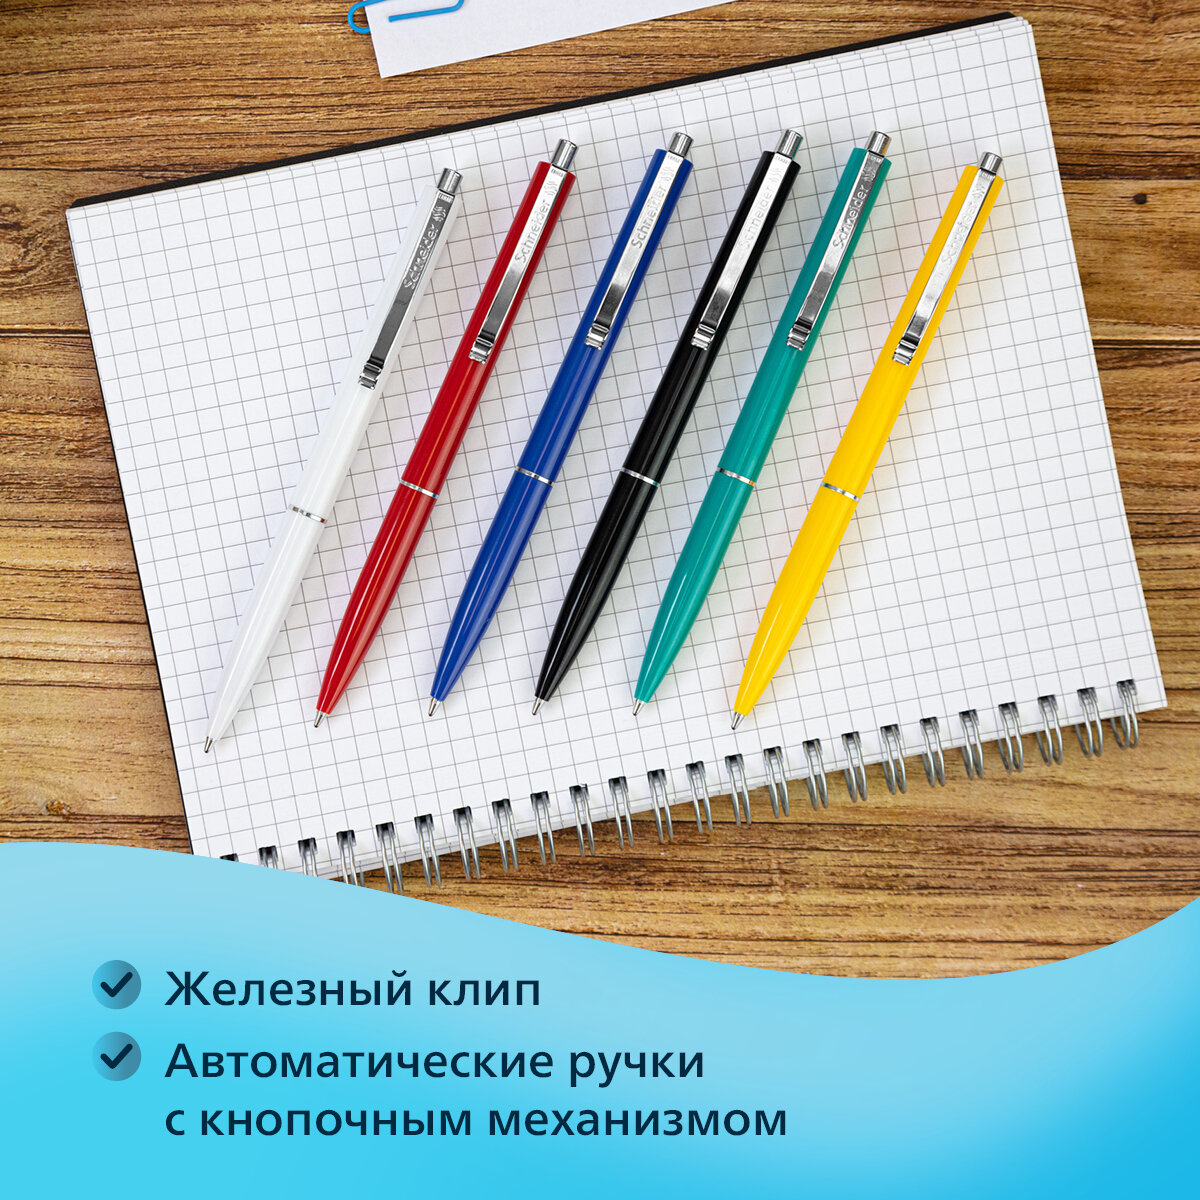 Ручки шариковые синие автоматические набор для школы 4 штуки/ комплект Schneider "K15" линия письма 0,5 мм, для документов, канцелярия для офиса/ сделано в Германии